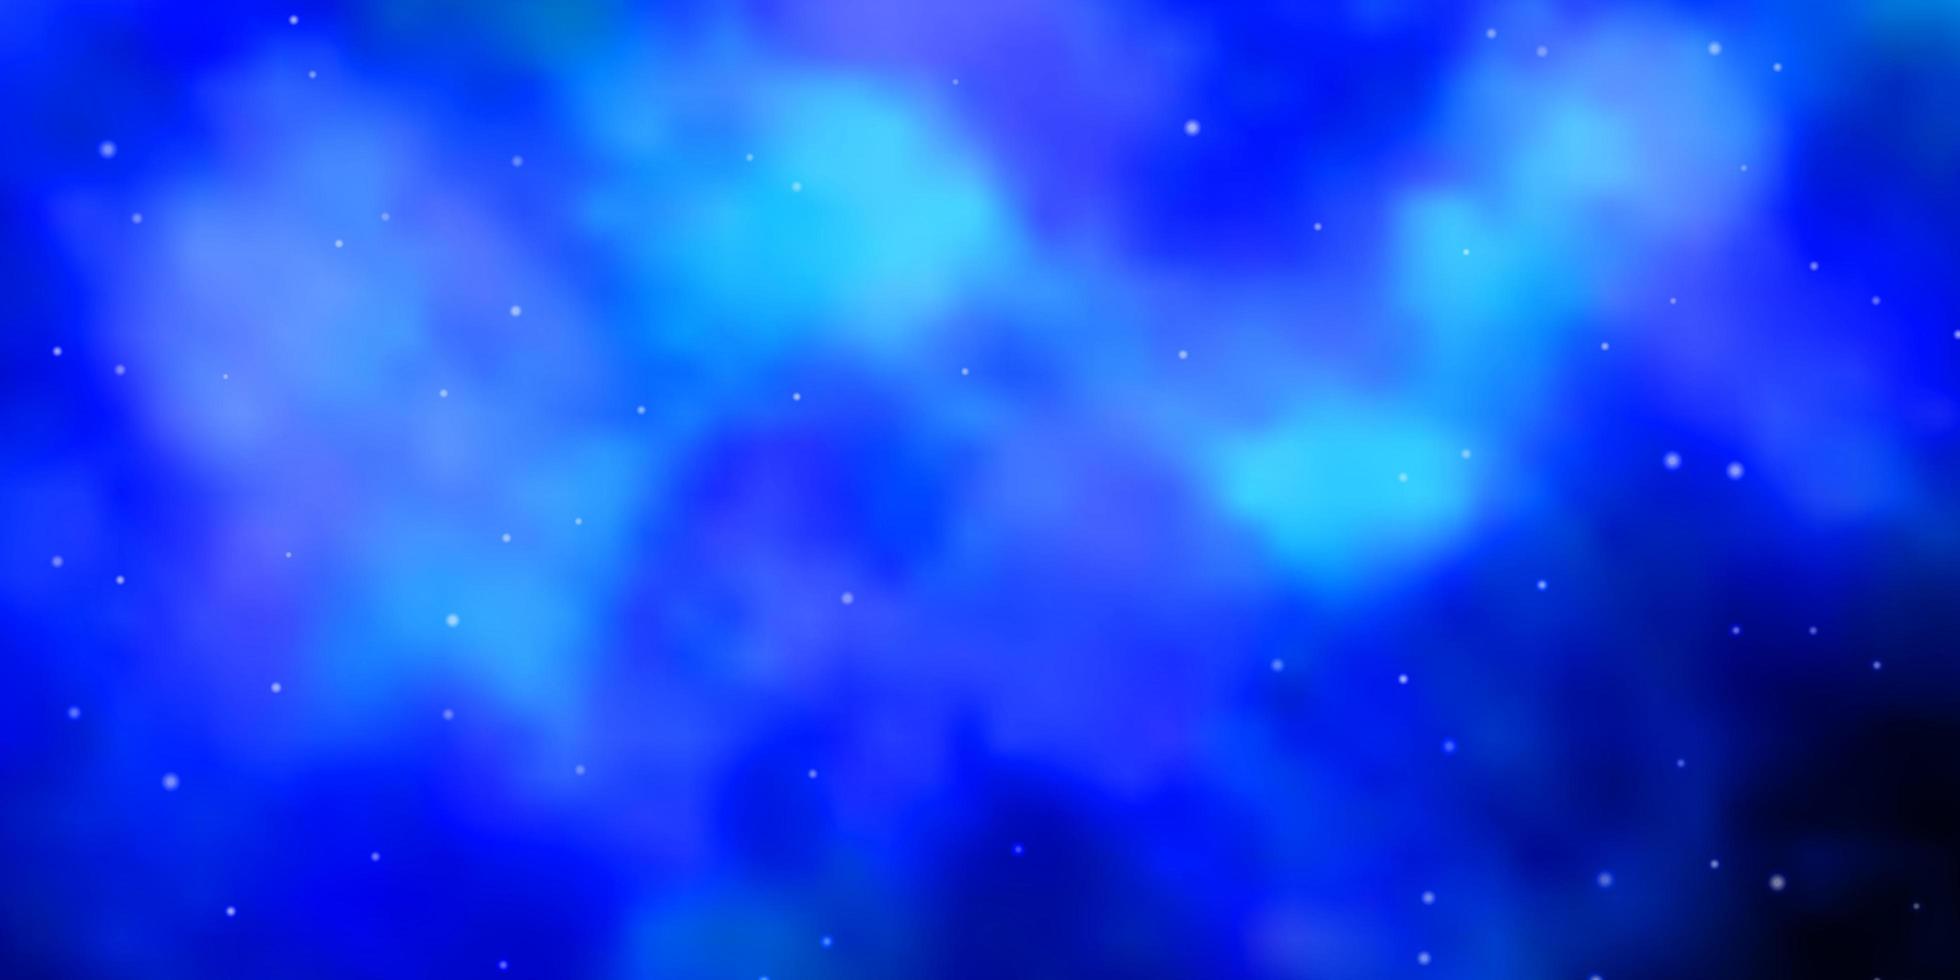 mörkblå vektorbakgrund med små och stora stjärnor färgglada illustration i abstrakt stil med gradient stjärnor mönster för webbplatser målsidor vektor